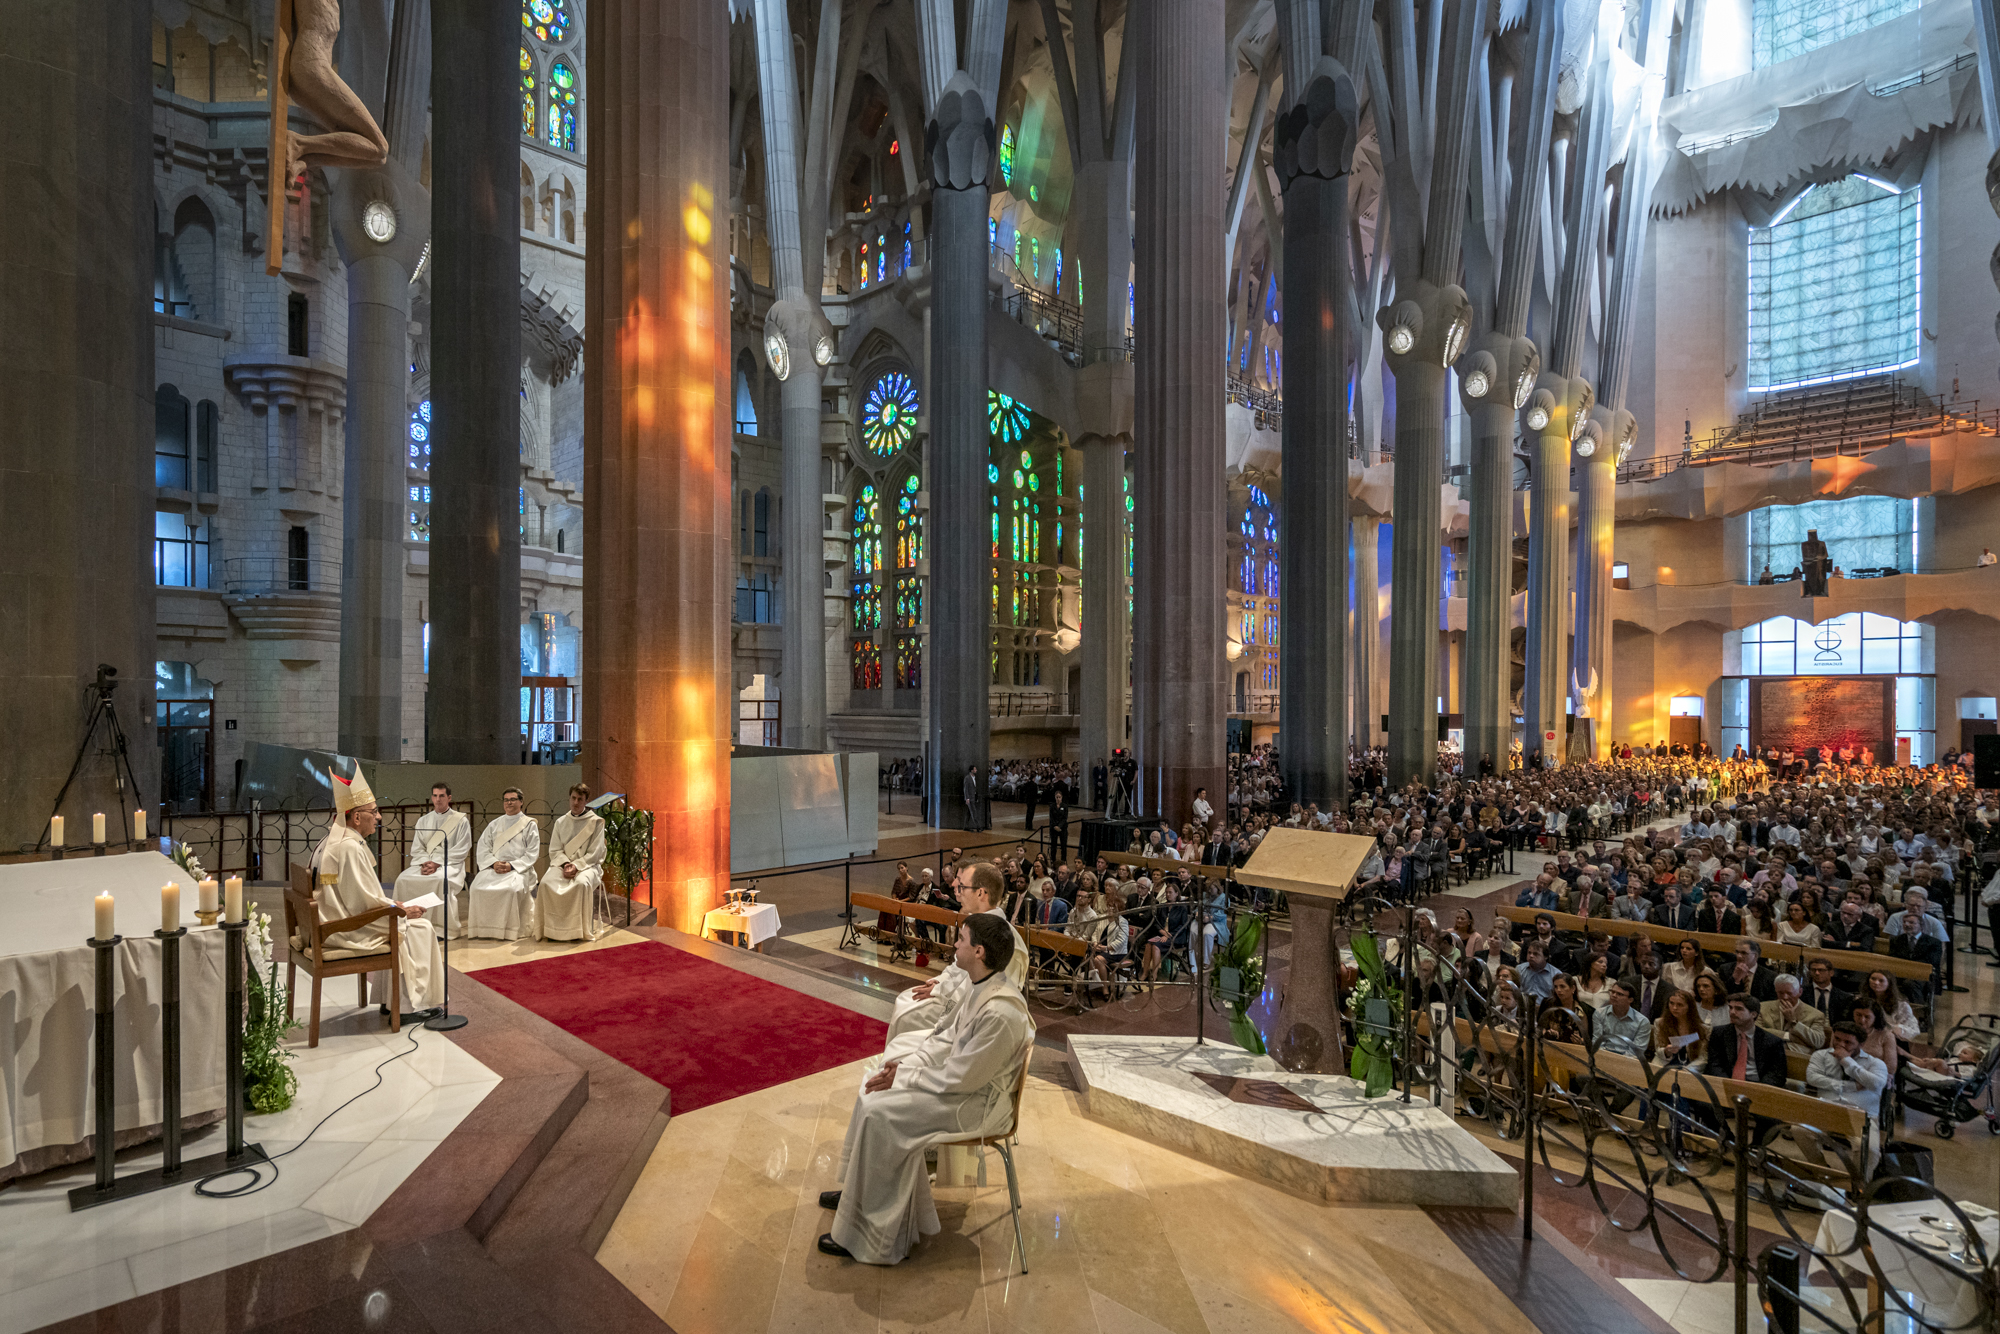 Nova missa d’ordenacions sacerdotals a la Sagrada Família